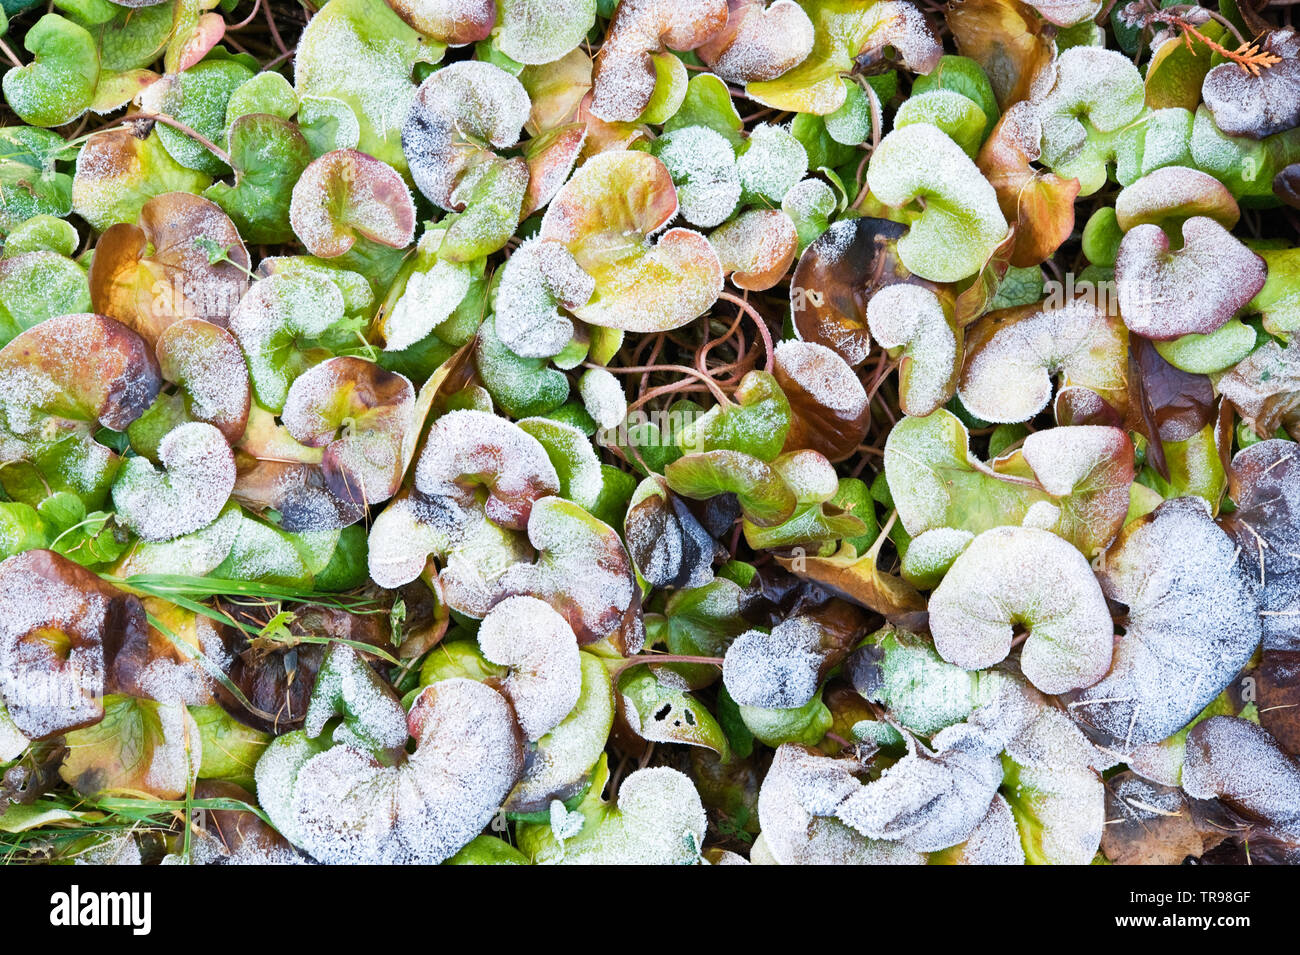 Le gingembre sauvage européenne (Asarum europaeum) recouvert de feuilles de givre. Banque D'Images